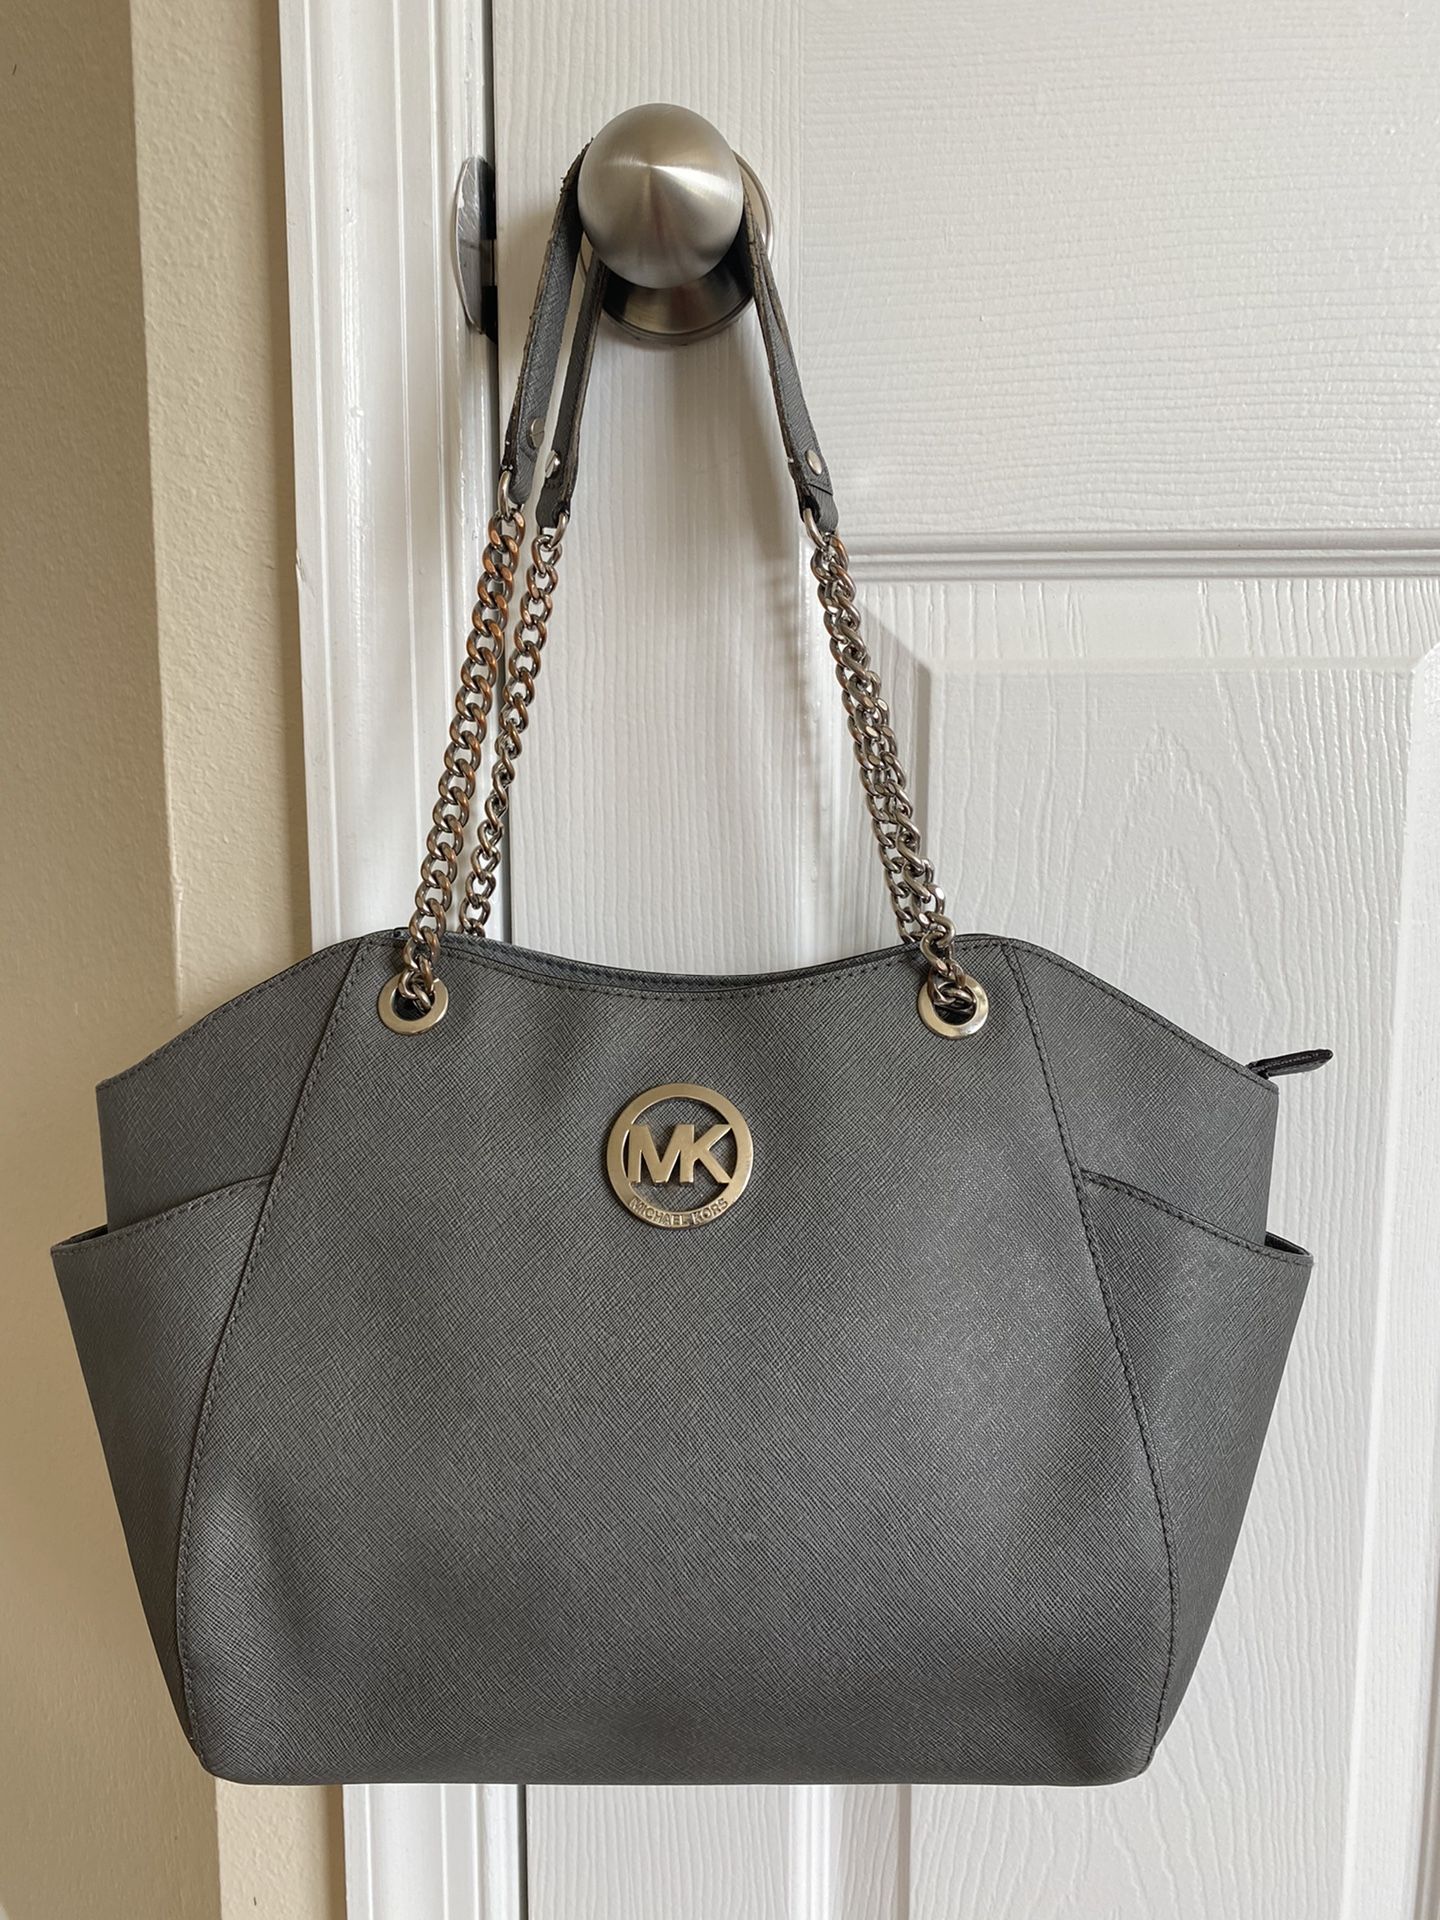 Leather Michael Kors Bag